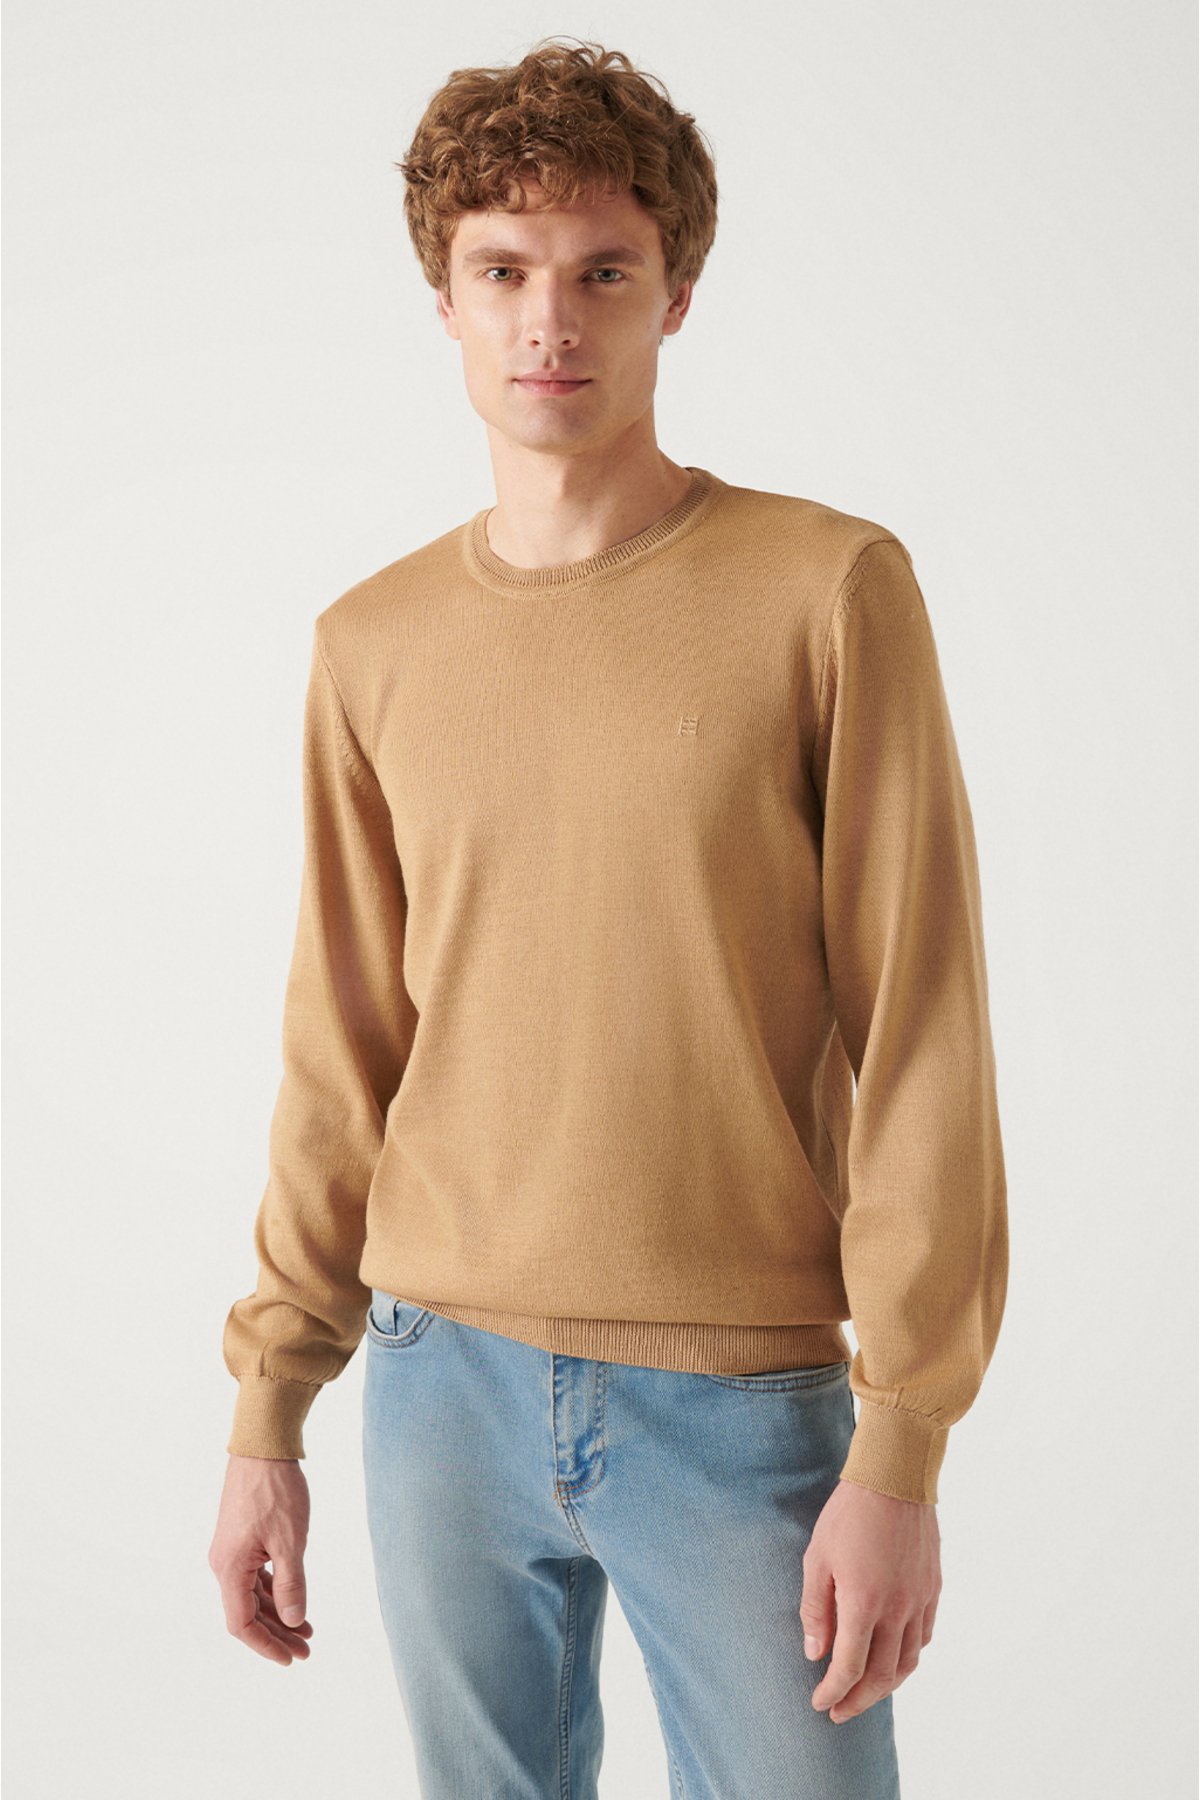 Avva Men's Beige Crew Neck Wool Blended Standard Fit Normal Cut Knitwear Sweater